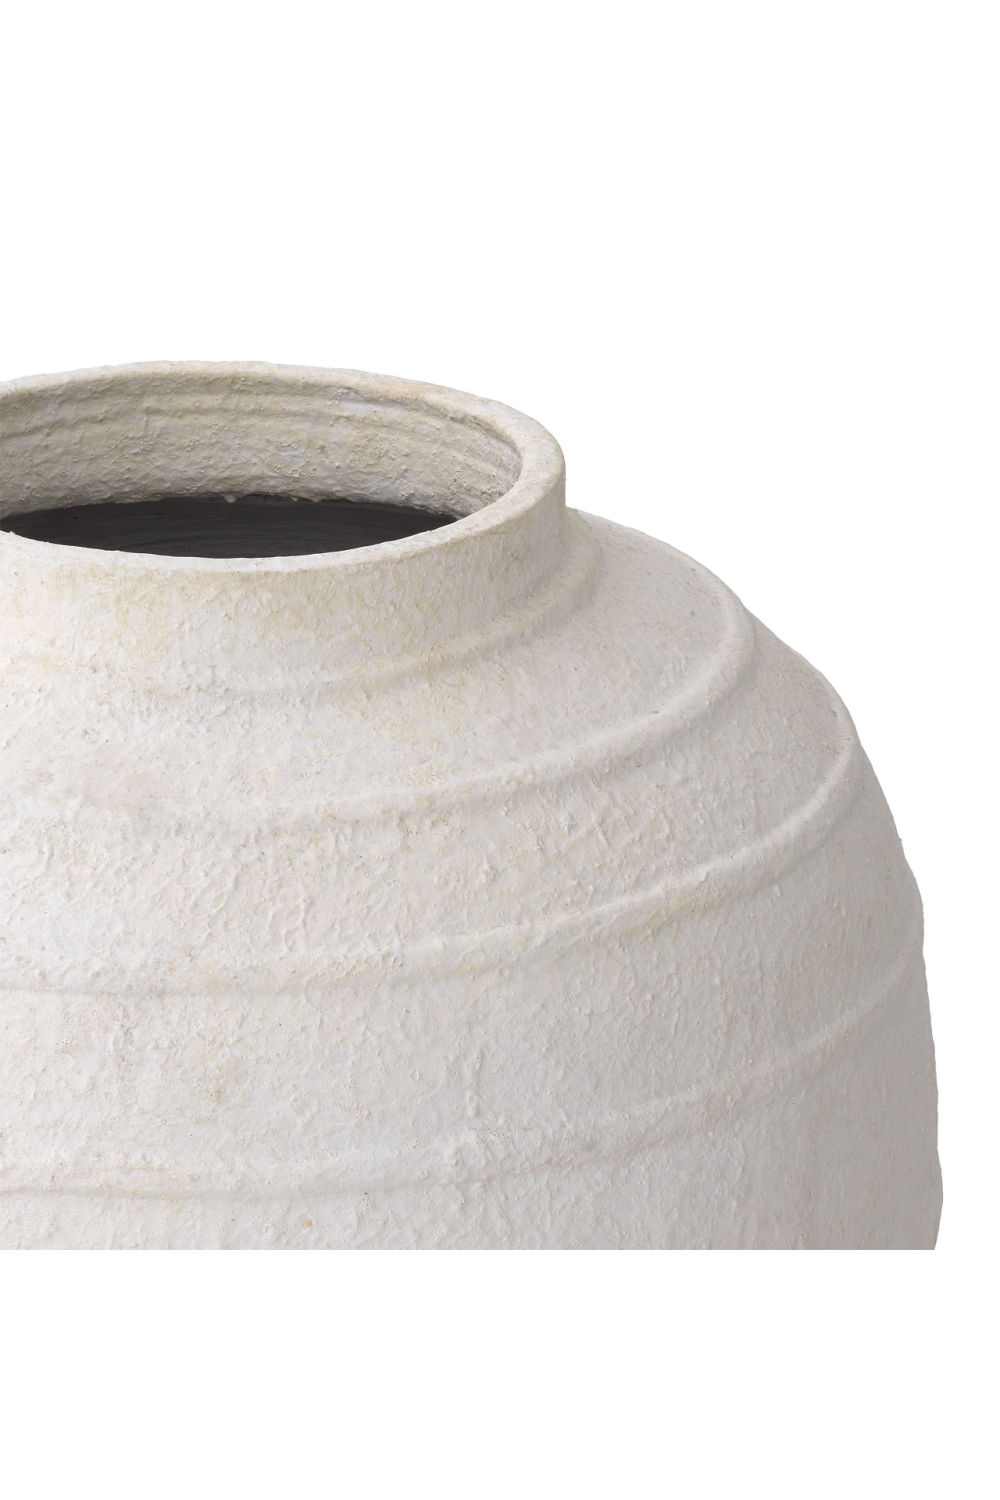 White Handmade Clay Vase | Eichholtz Romane | OROA